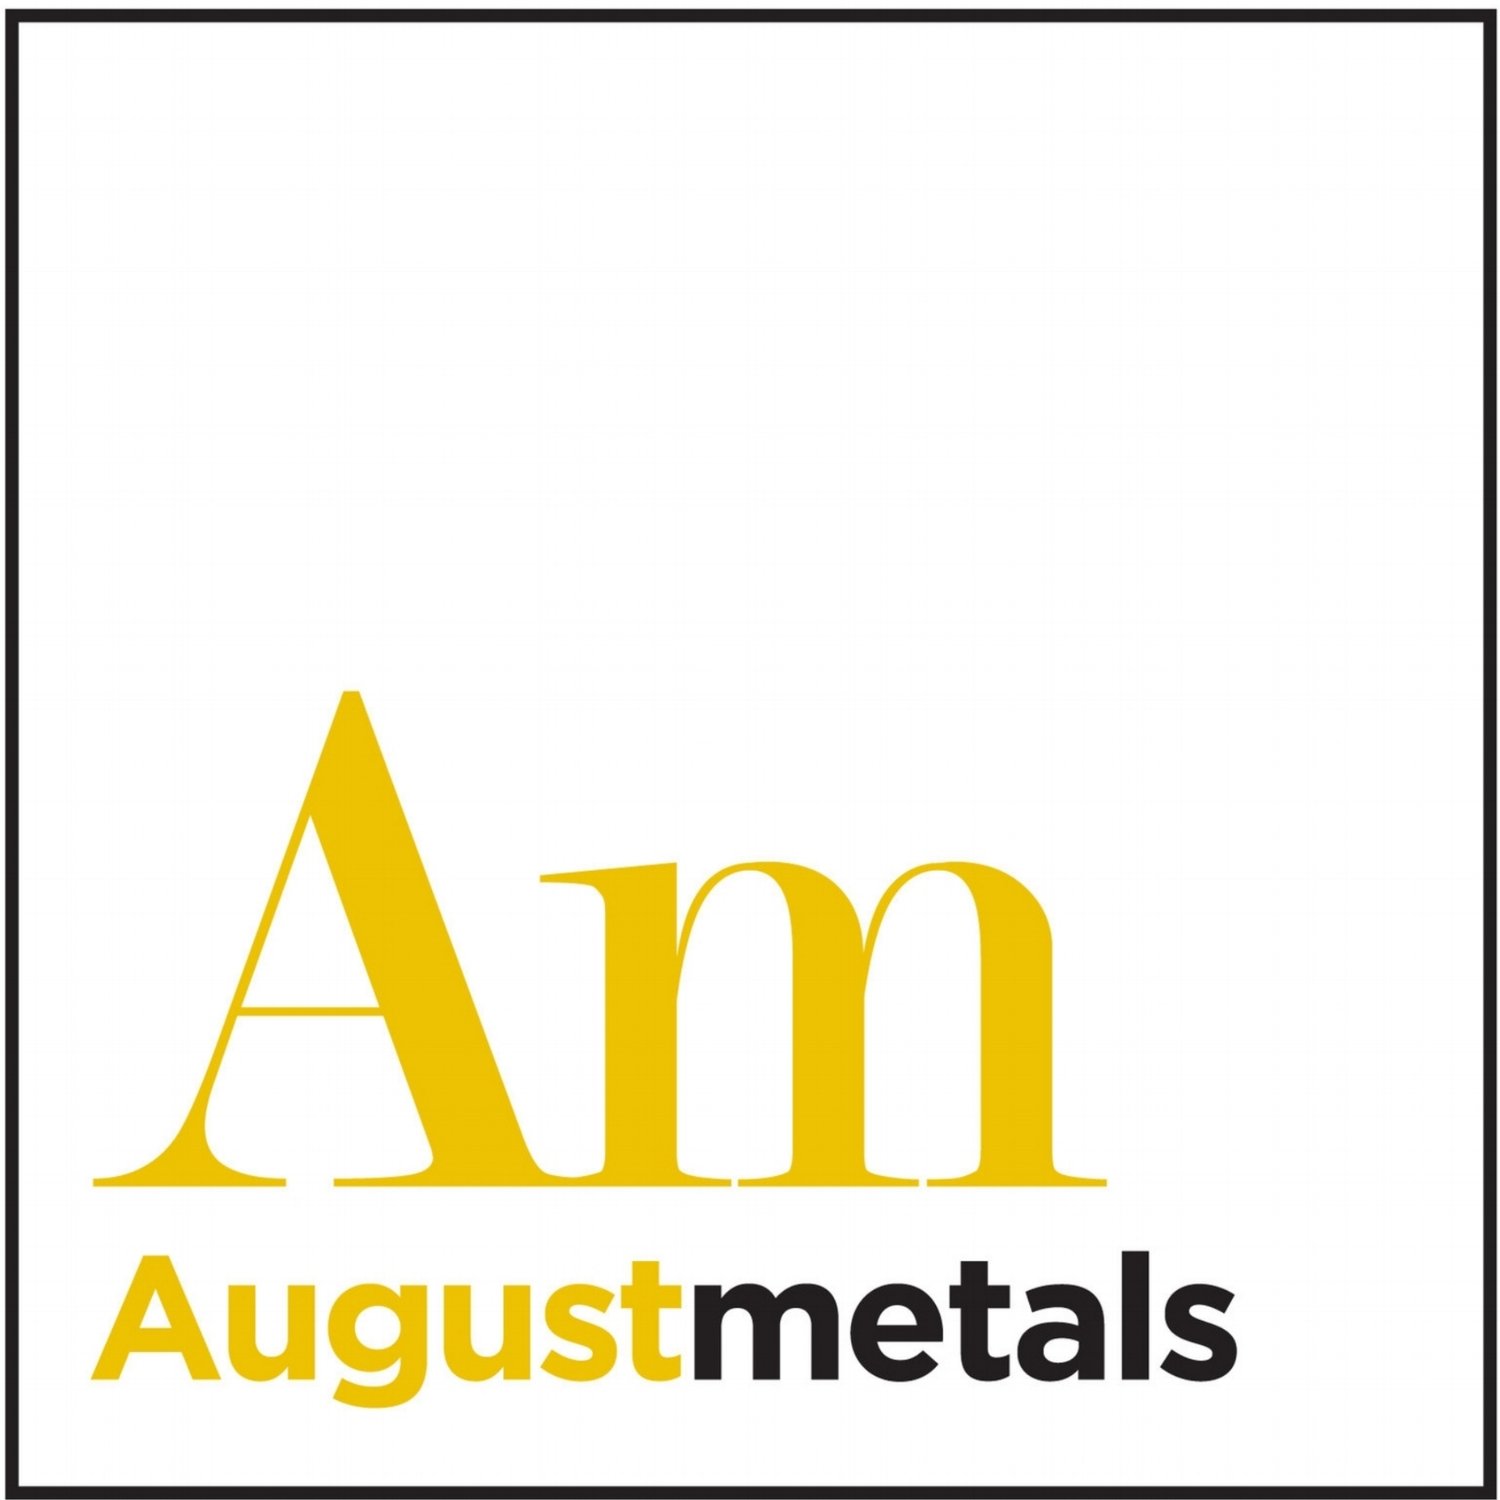 August Metals